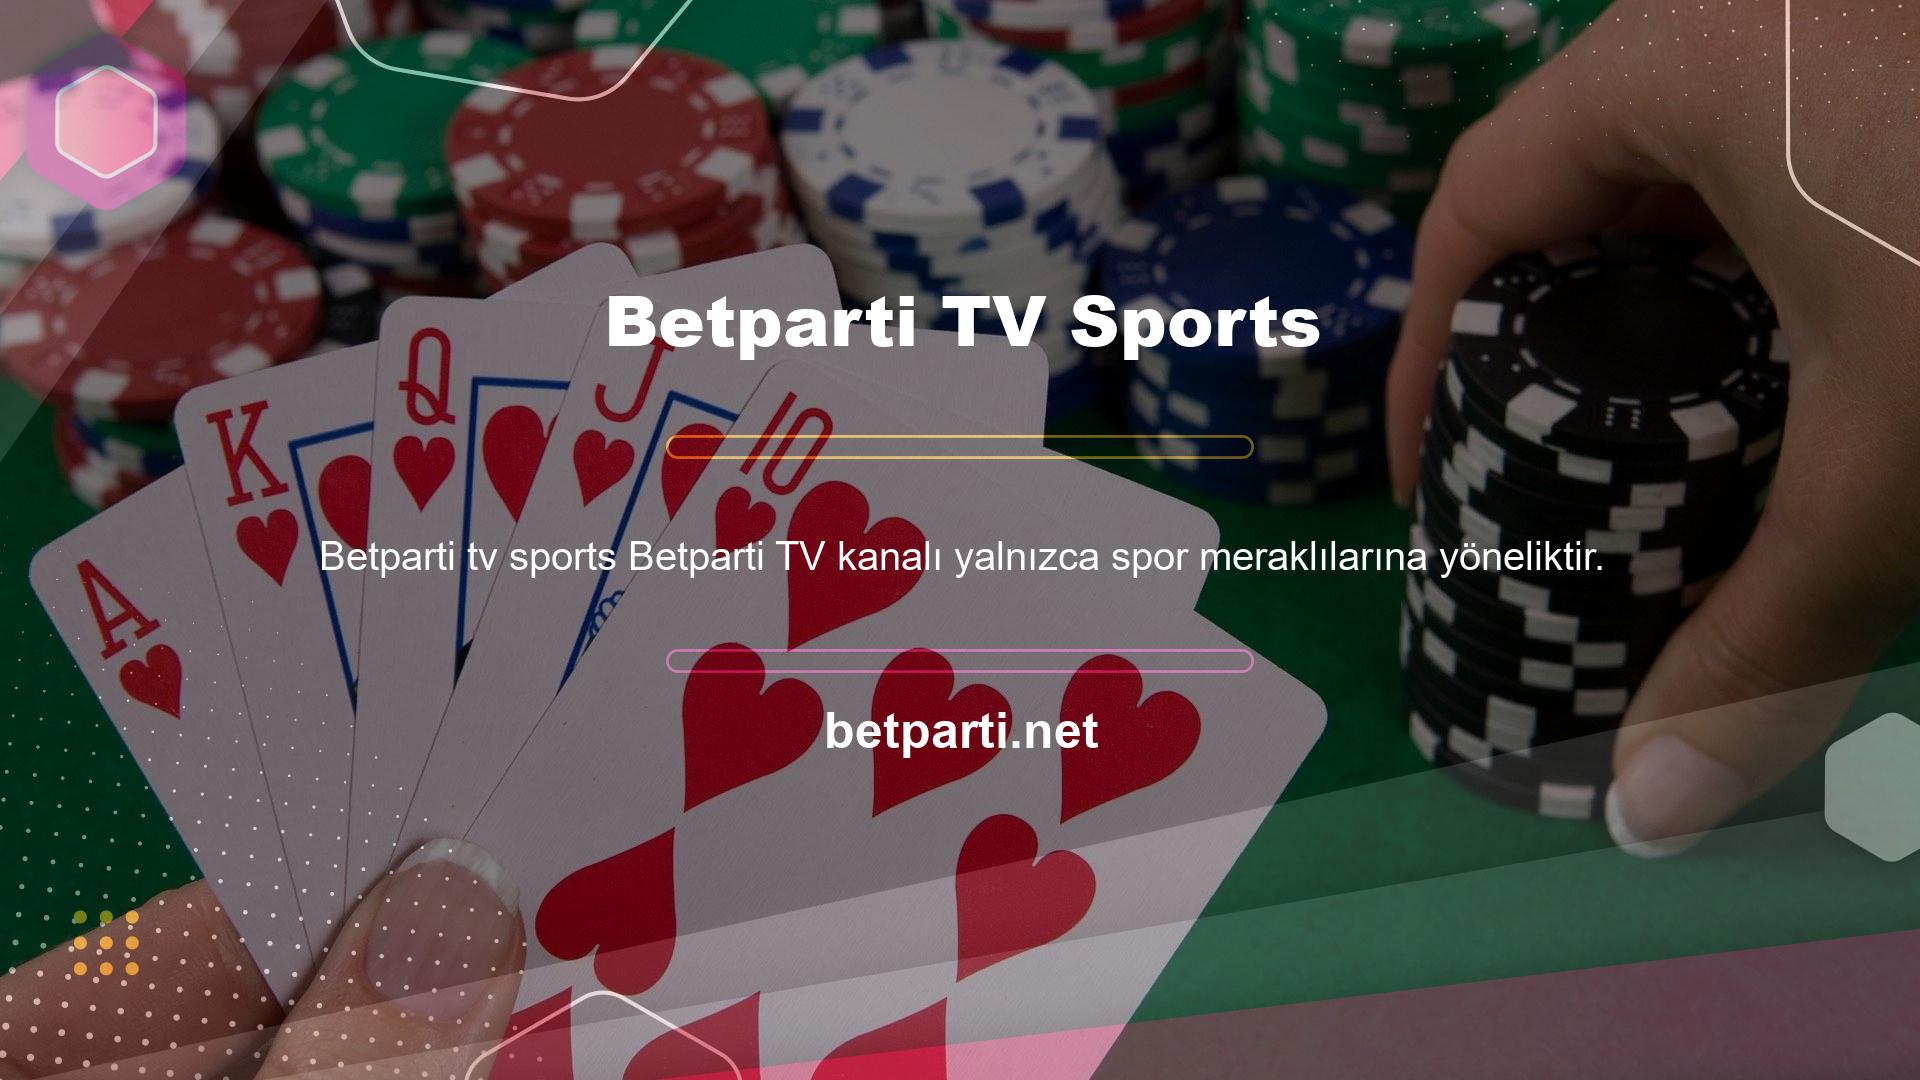 Betparti TV spor canlı maçları bölümü, izleyicilerin farklı spor dallarına ait ücretsiz canlı maçları izlemesine ve keyfini çıkarmasına olanak tanıyan ek bir alandır